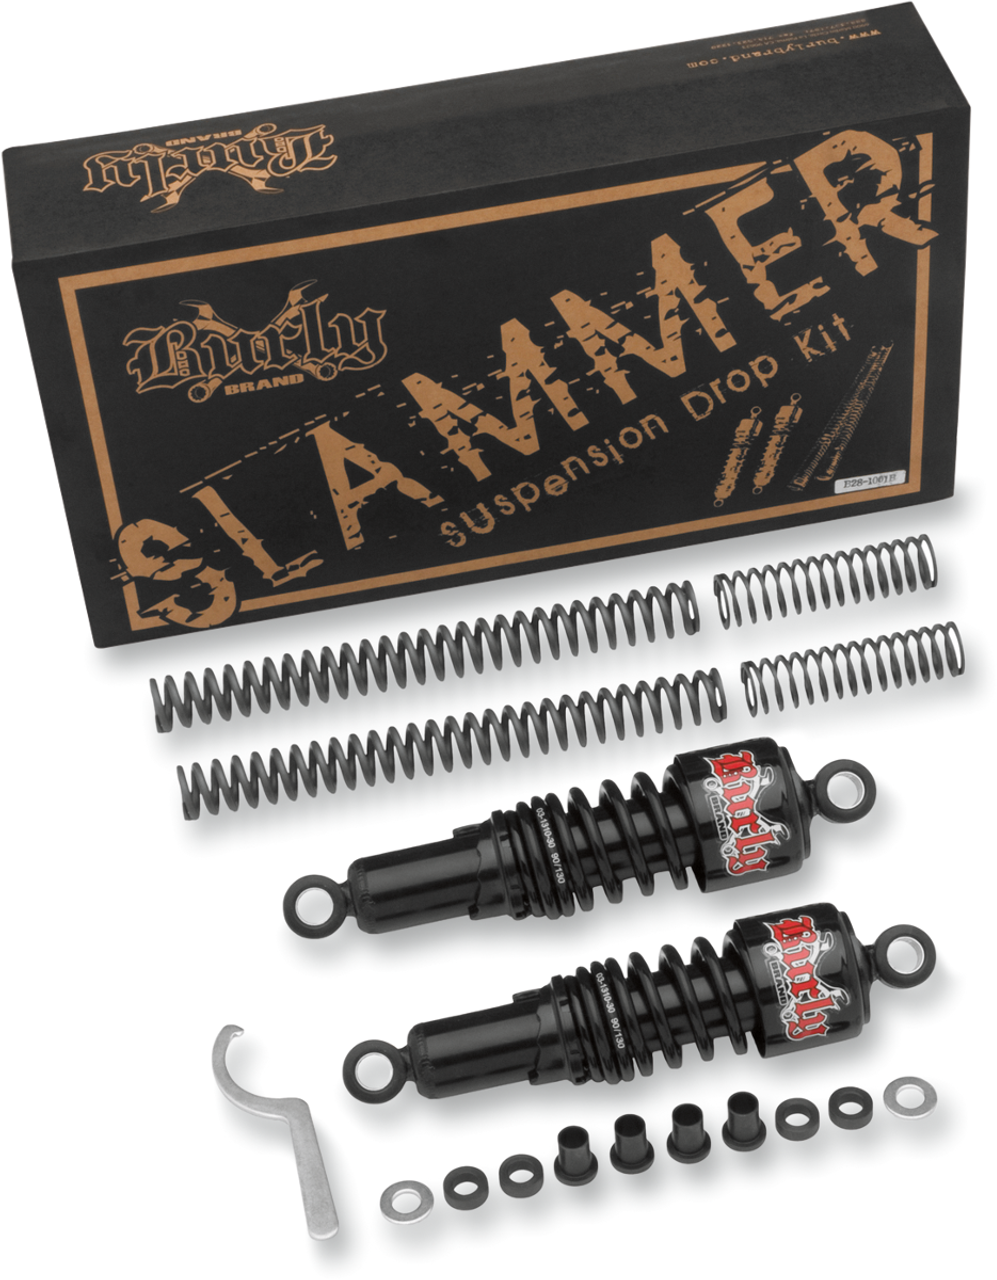 Suspension Kit - Slammer - Black - 04 - 15 XL